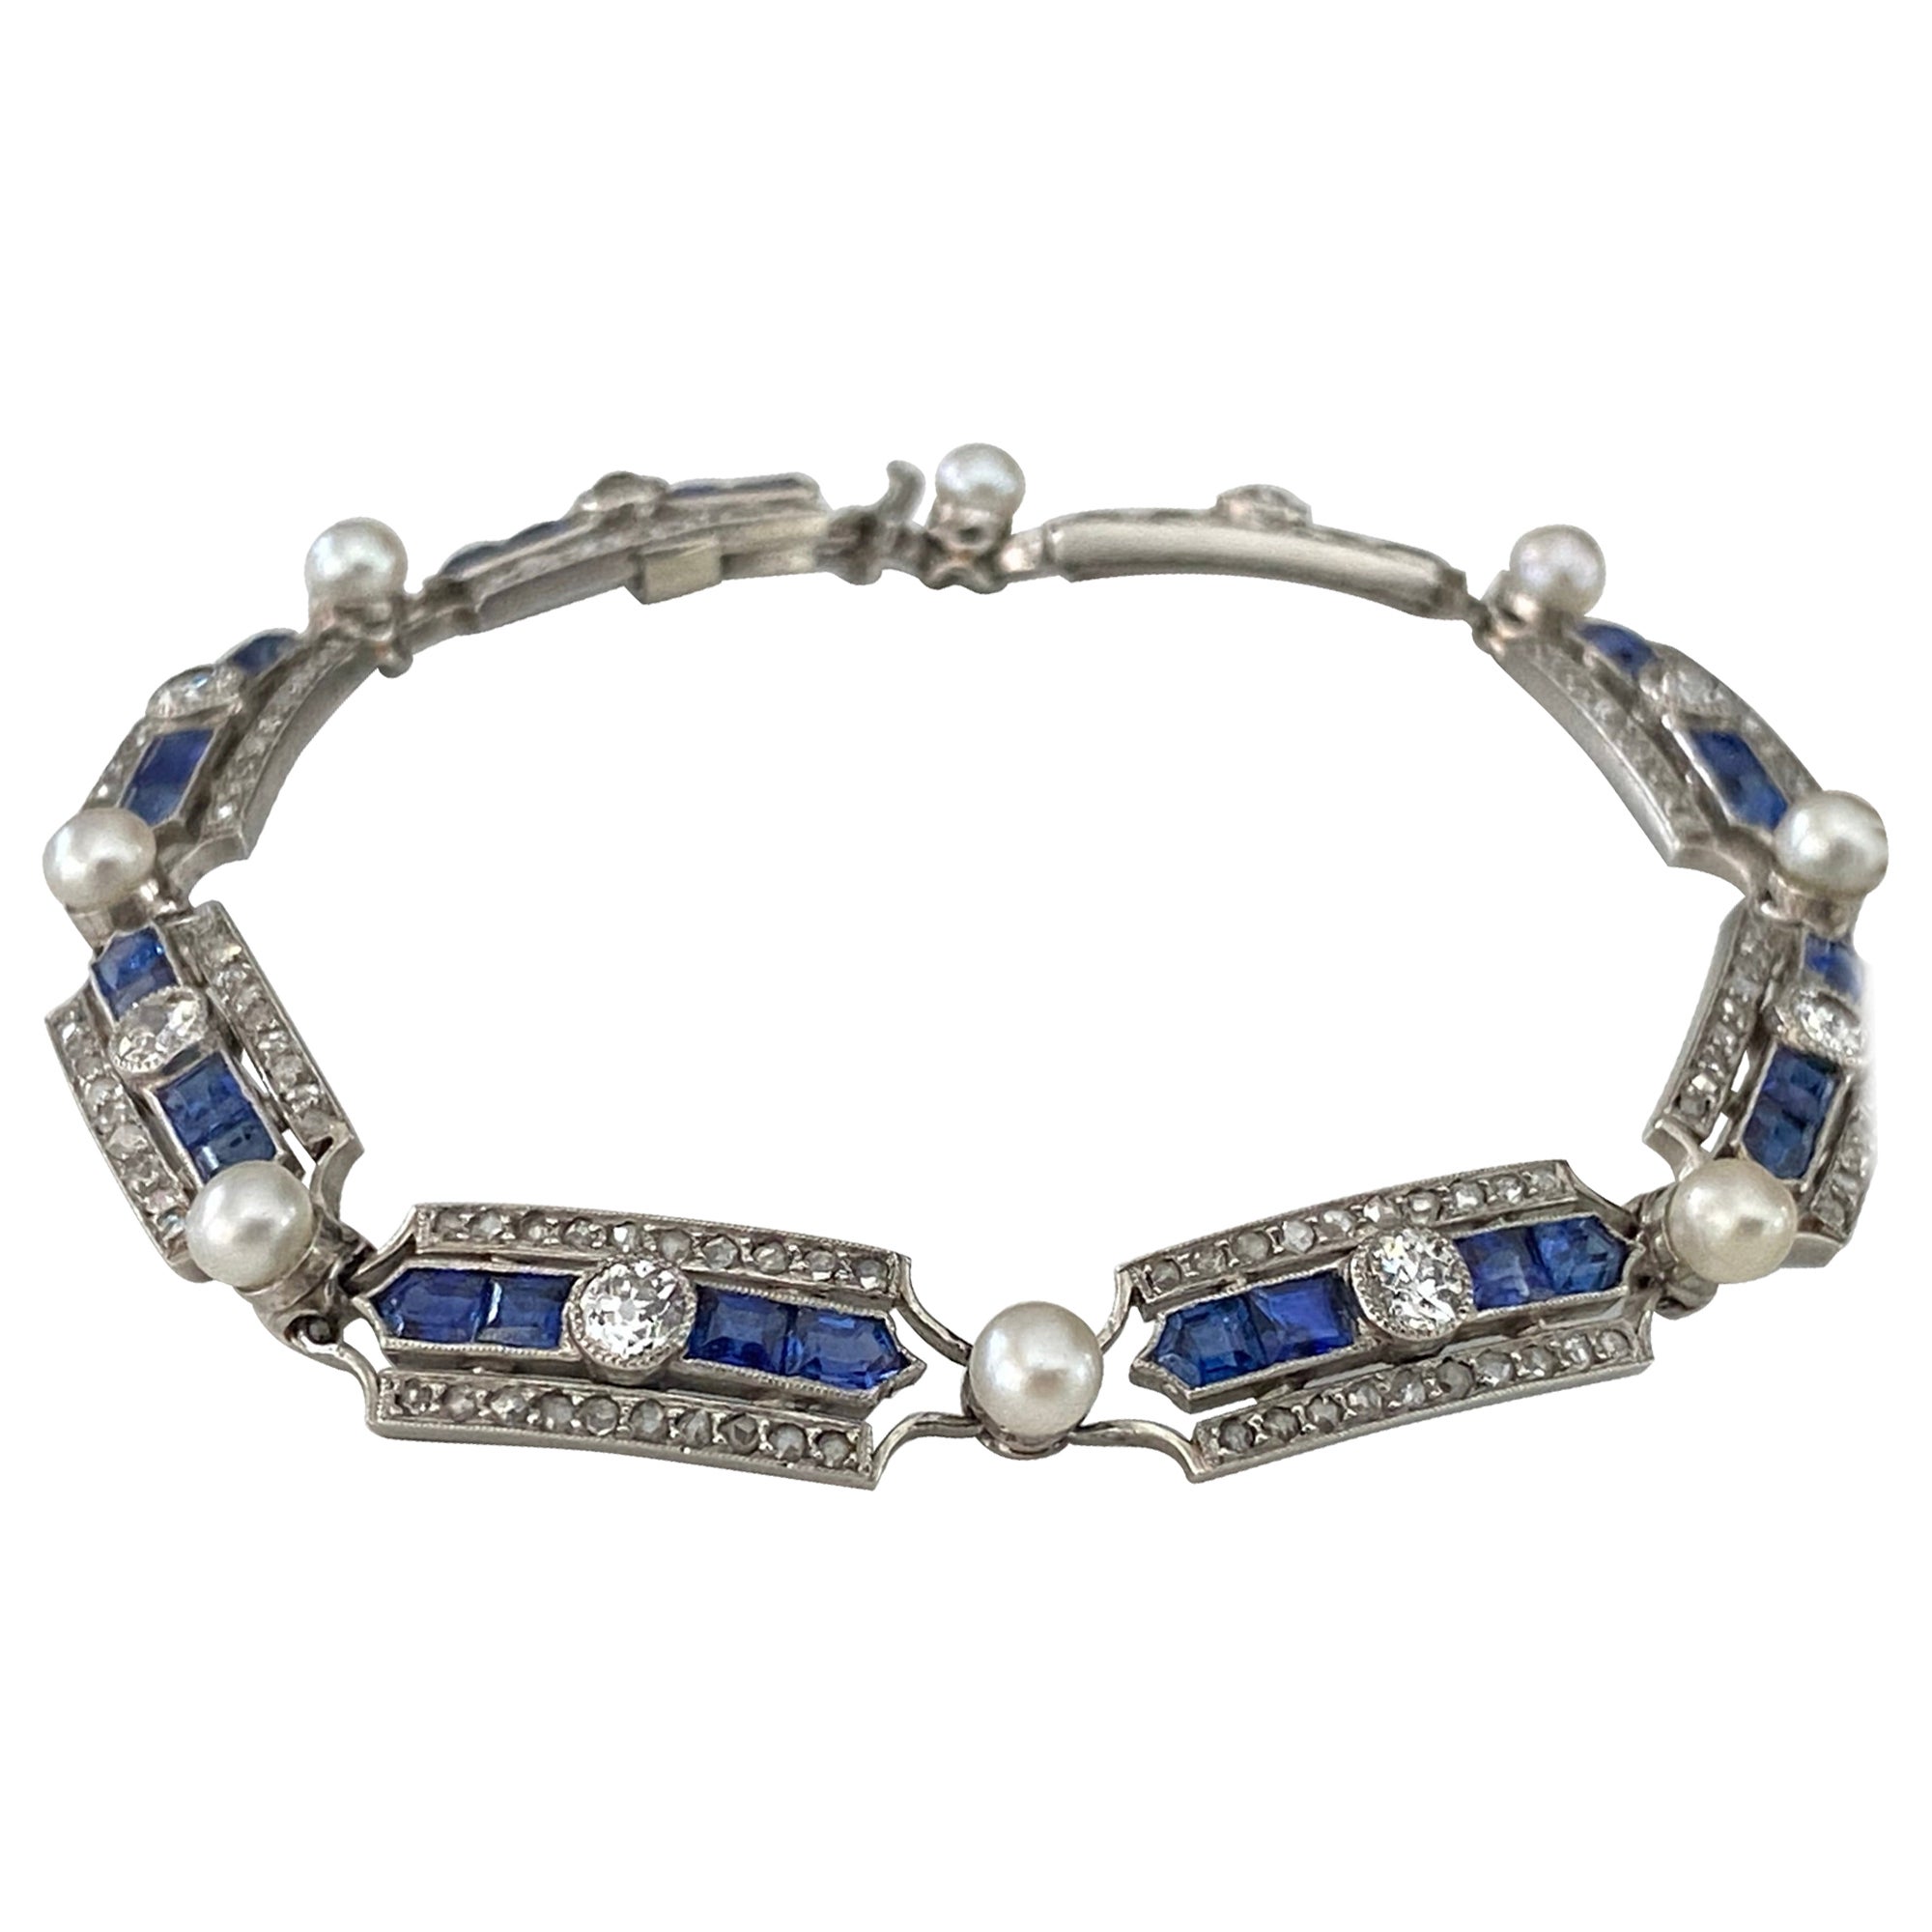 Antikes franzsisches Armband aus der Belle Epoque mit Diamanten, Saphiren und Perlen